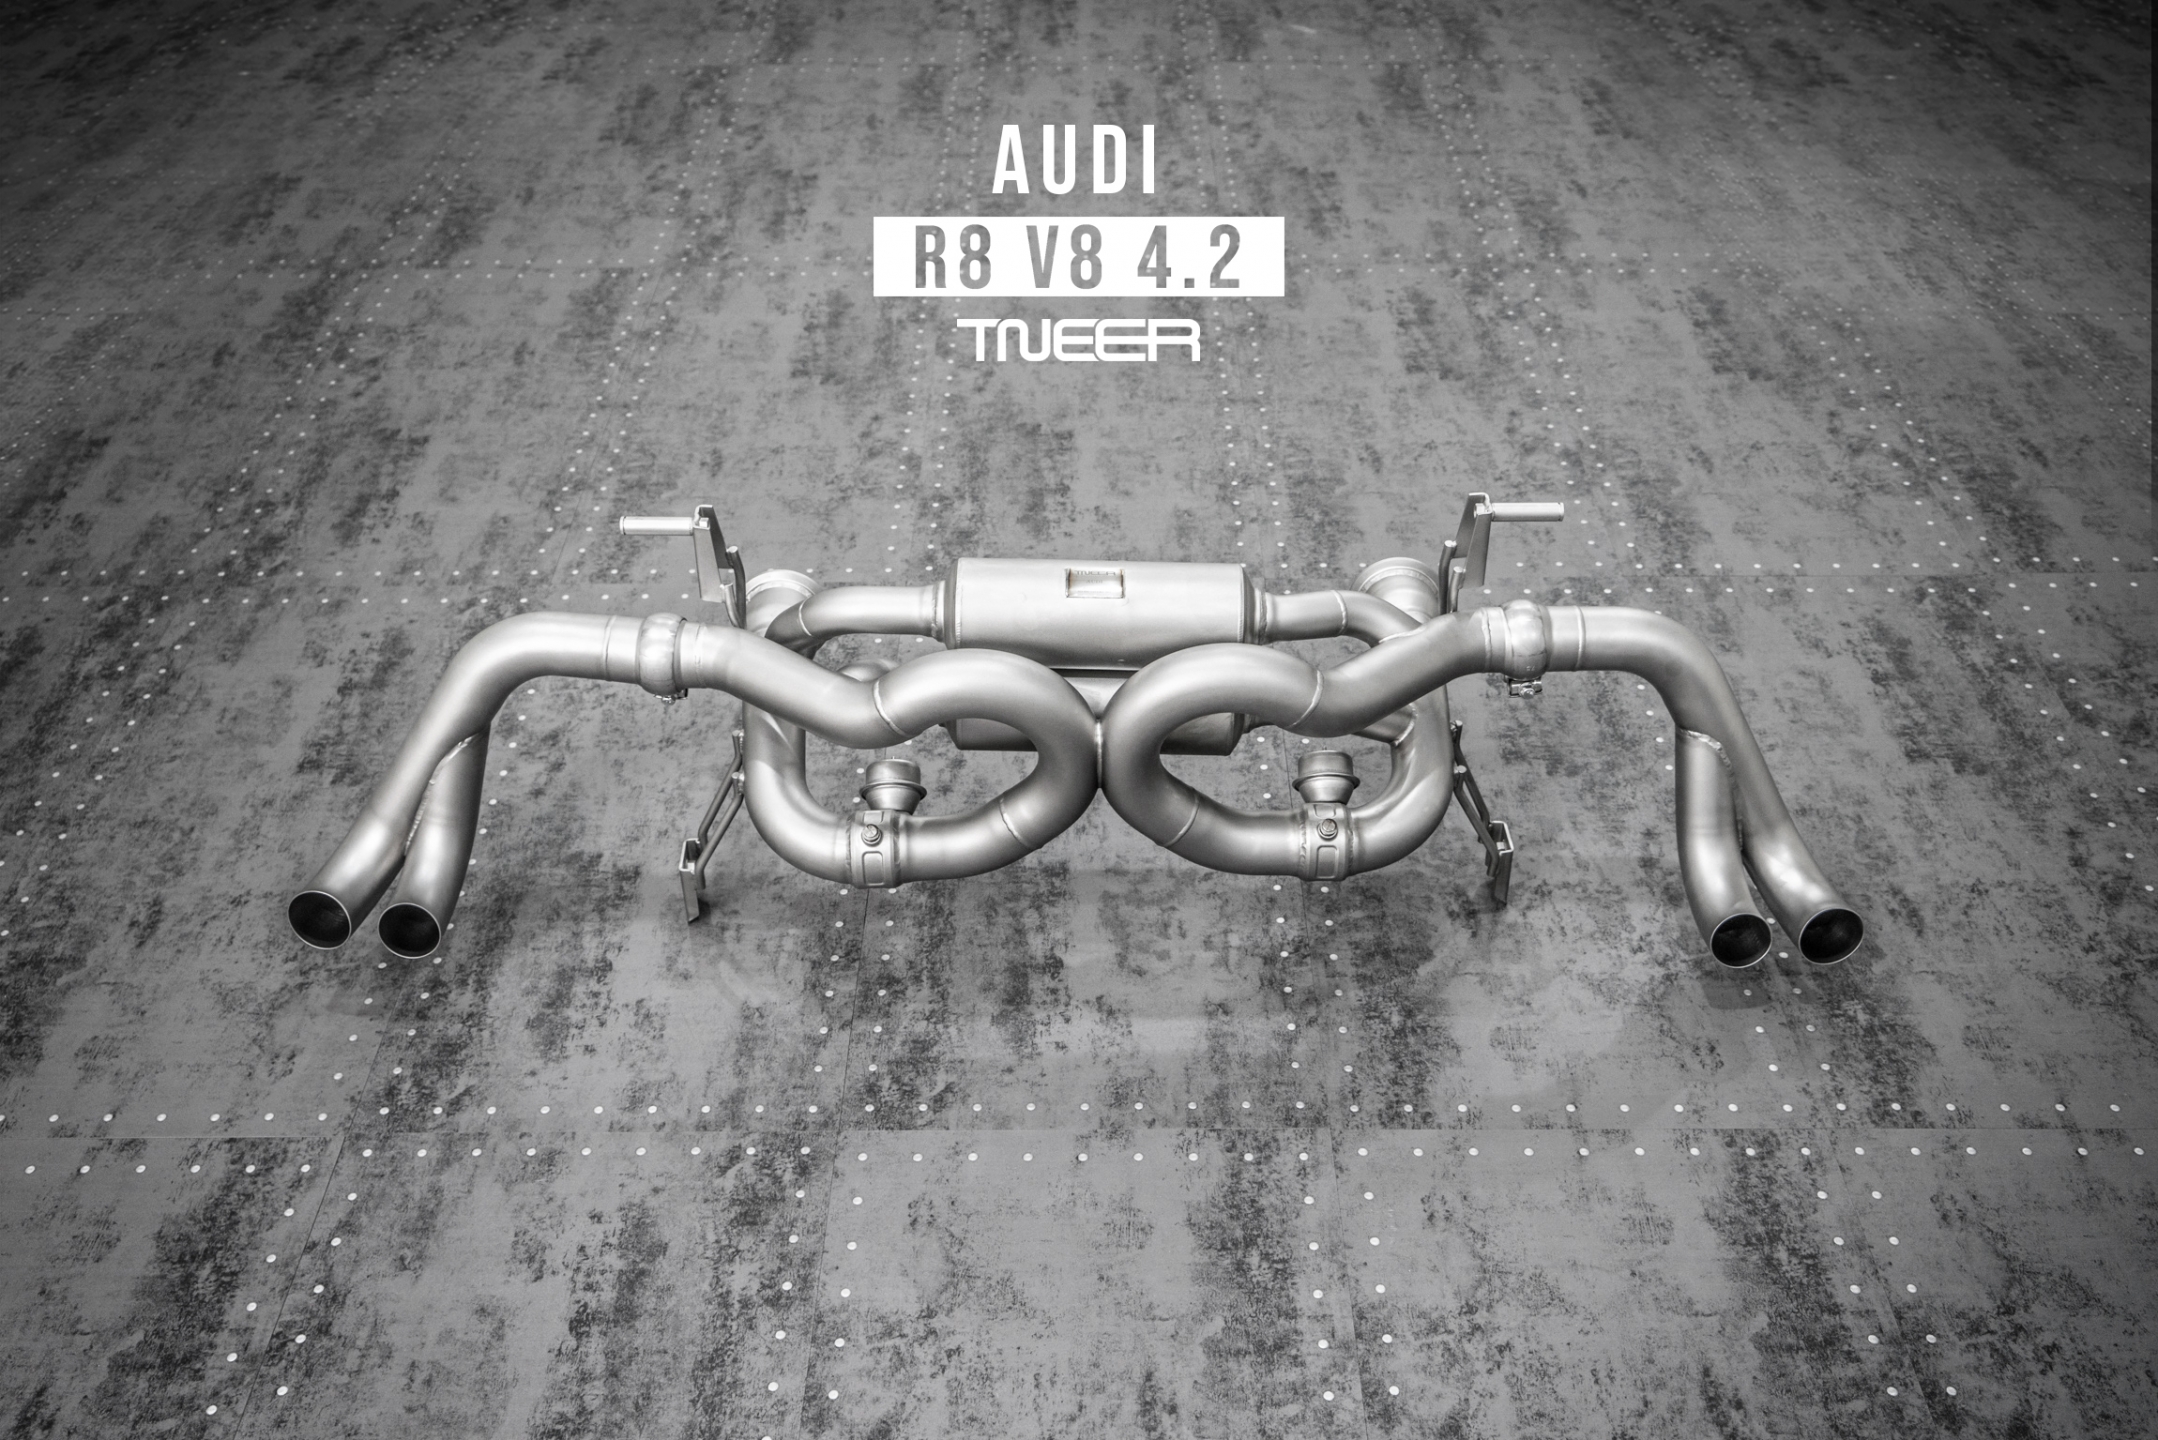 Audi R8 (MK1) V8 TNEER Valvetronic Rear Mufflers Exhaust System